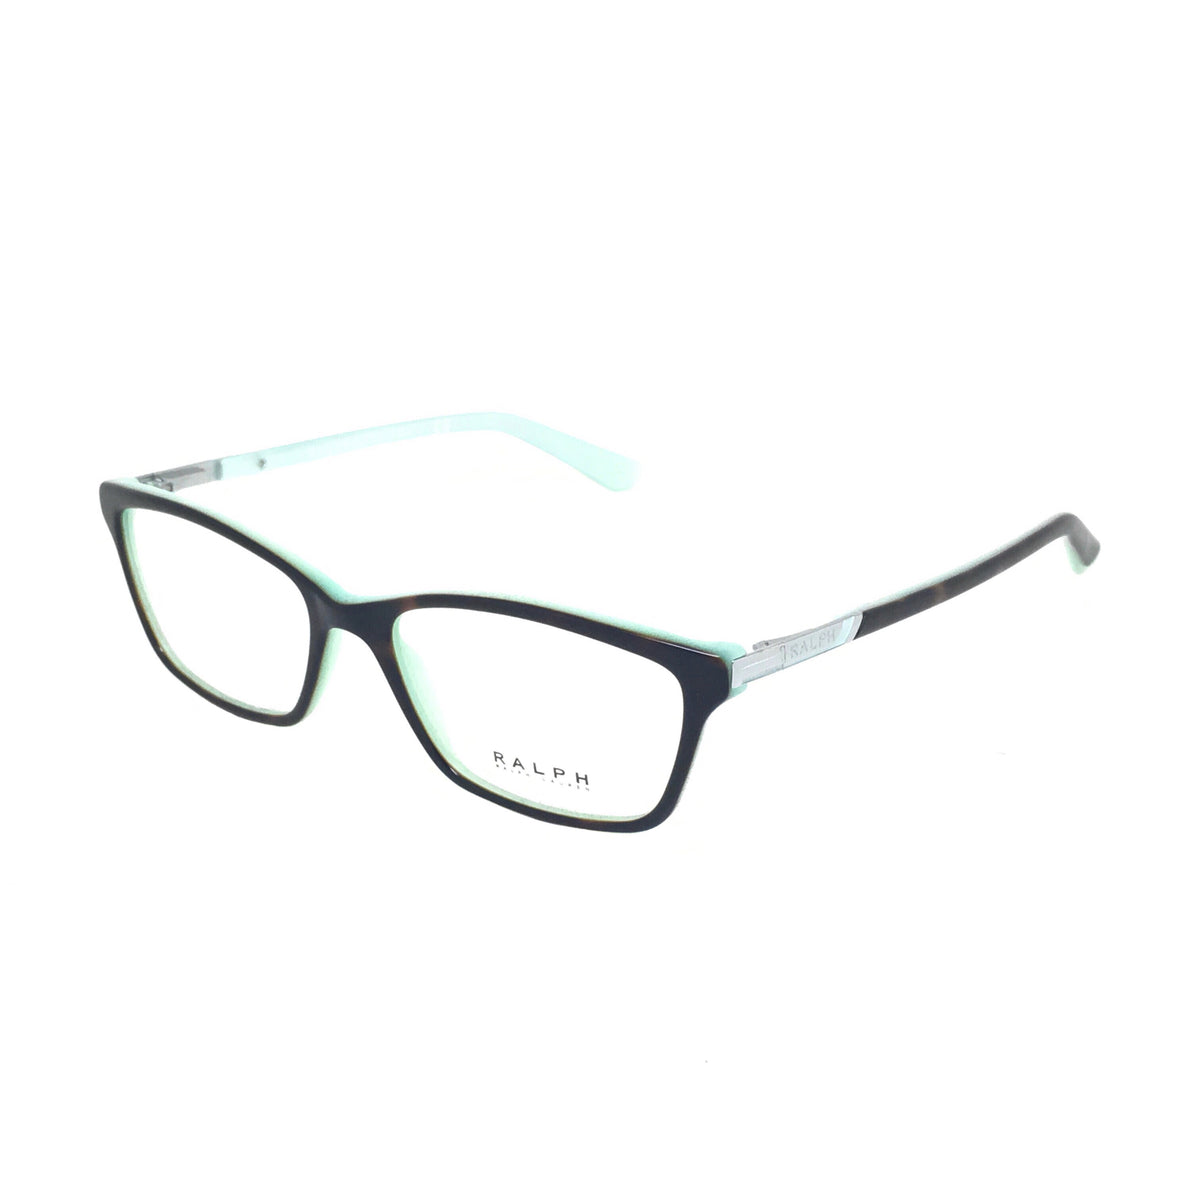 Ralph Lauren 7044 601 52x16 135 Prescription Glasses — Óptica Fernández Baca